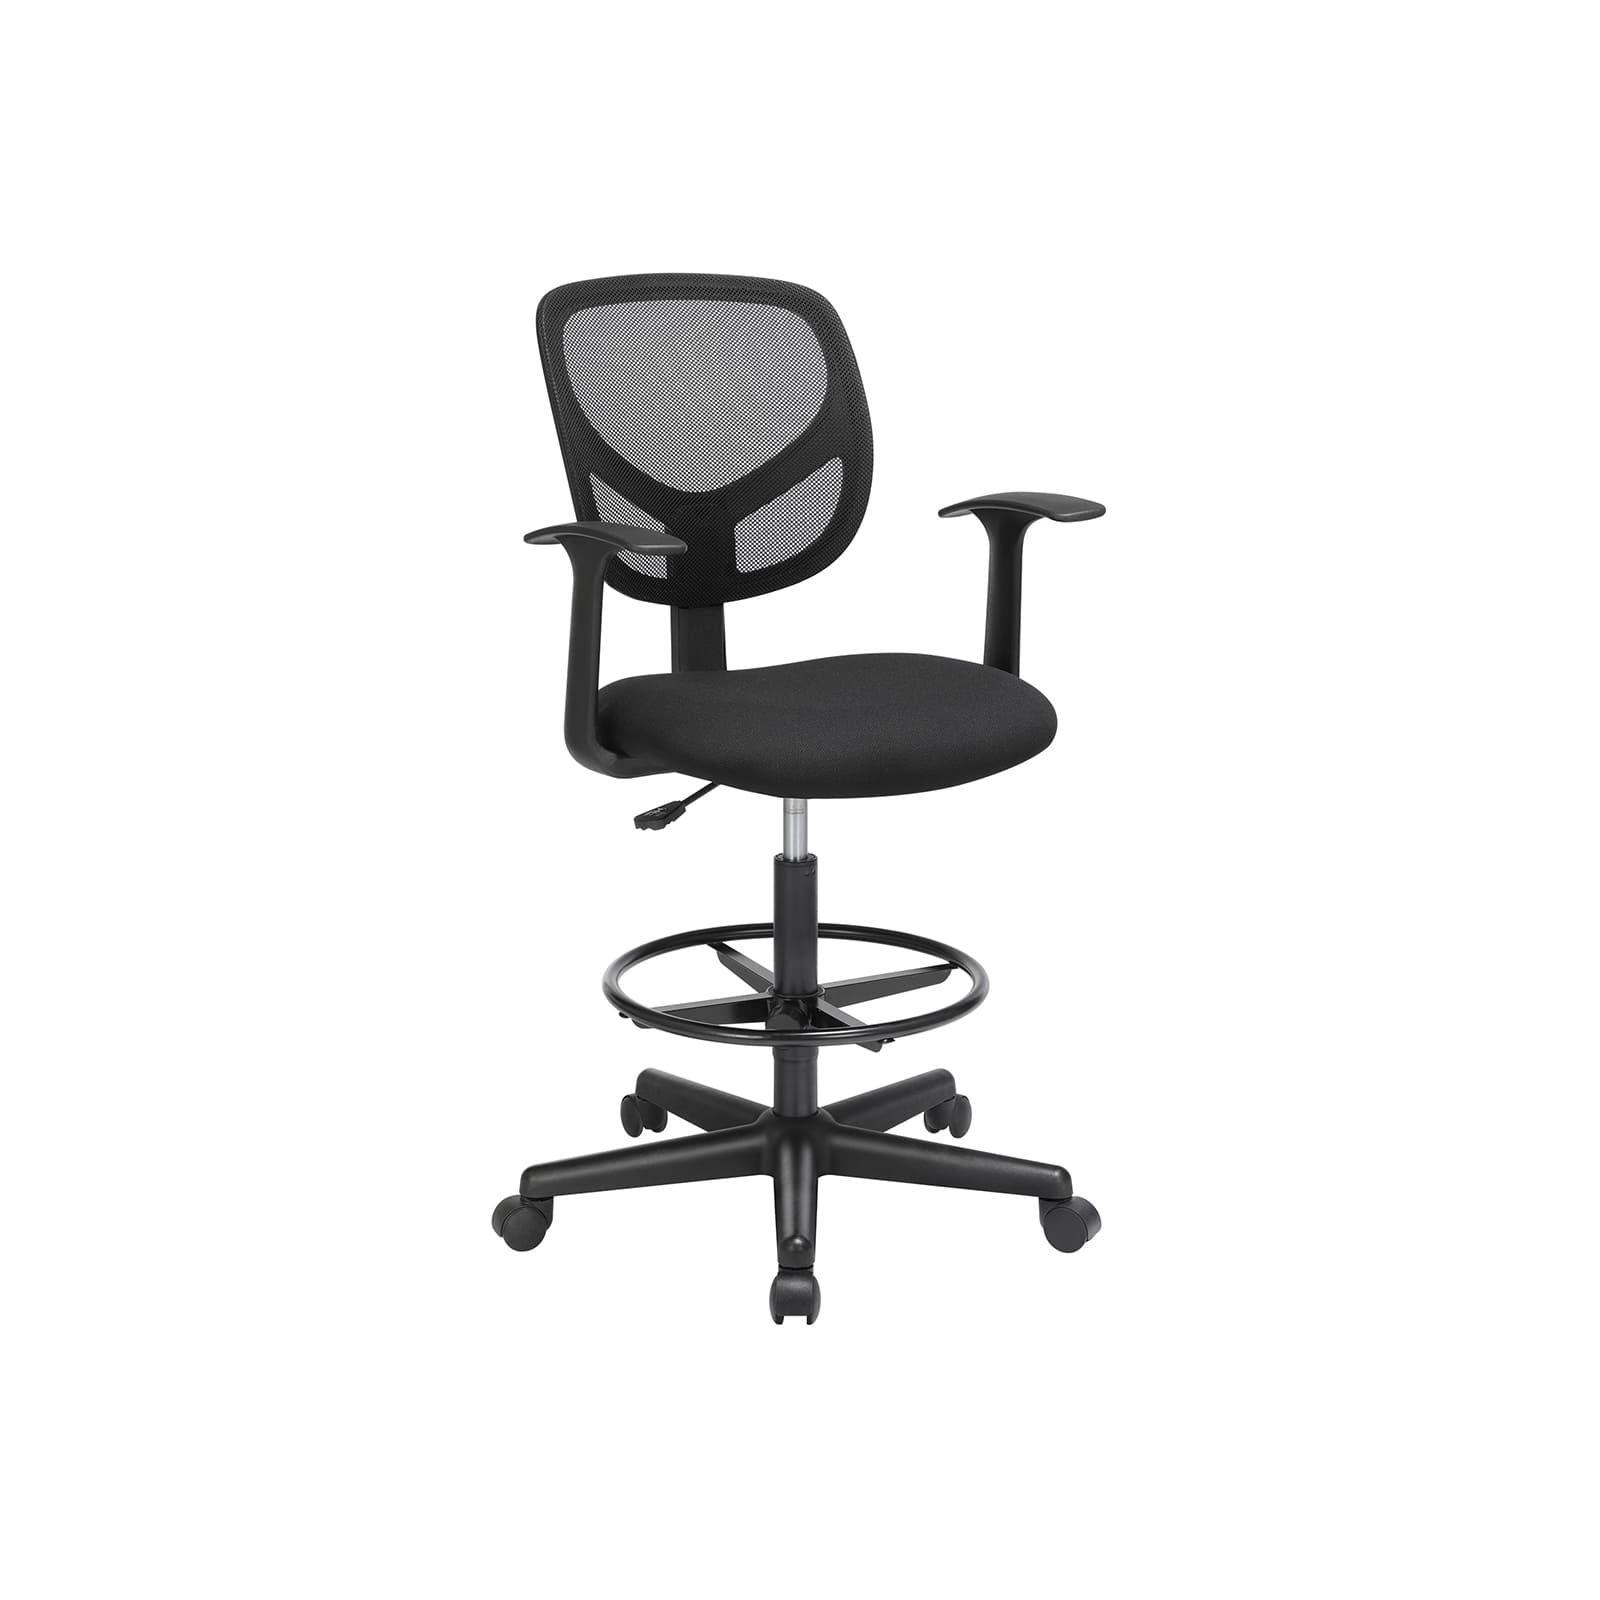 SONGMICS - sedia da ufficio, sgabello da lavoro ergonomico con braccioli, sedia da lavoro alta, con poggiapiedi regolabile